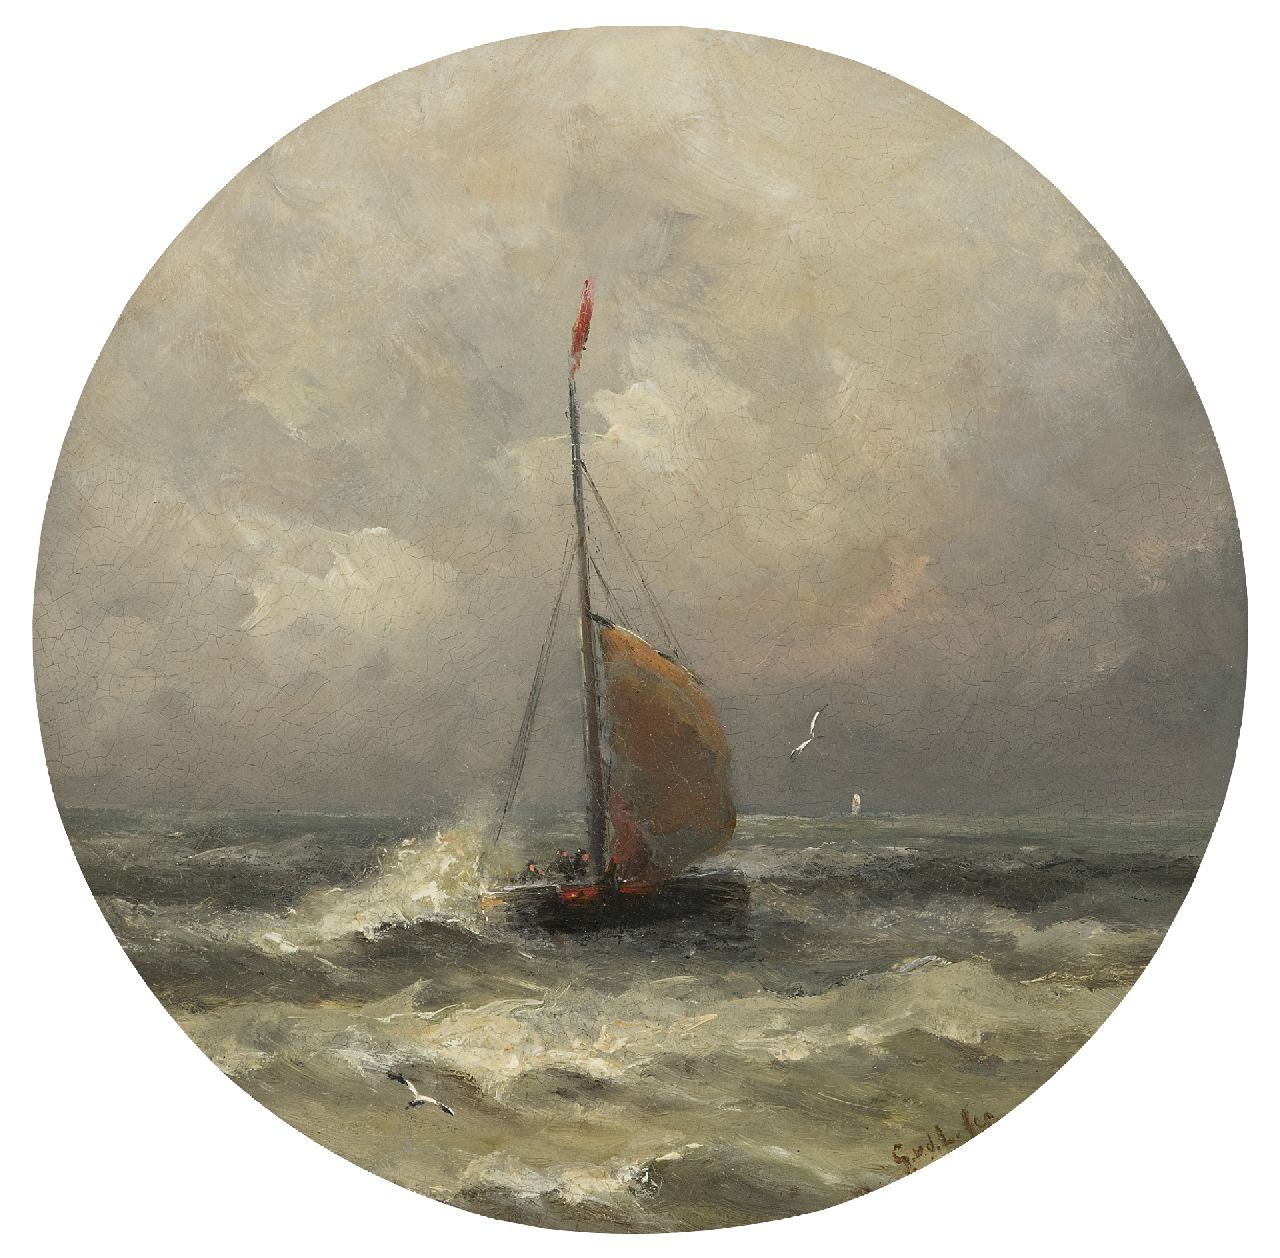 Laan G. van der | Gerard van der Laan | Schilderijen te koop aangeboden | Aankomende bomschuit, olieverf op porselein 28,3 x 28,3 cm, gesigneerd rechtsonder met initialen